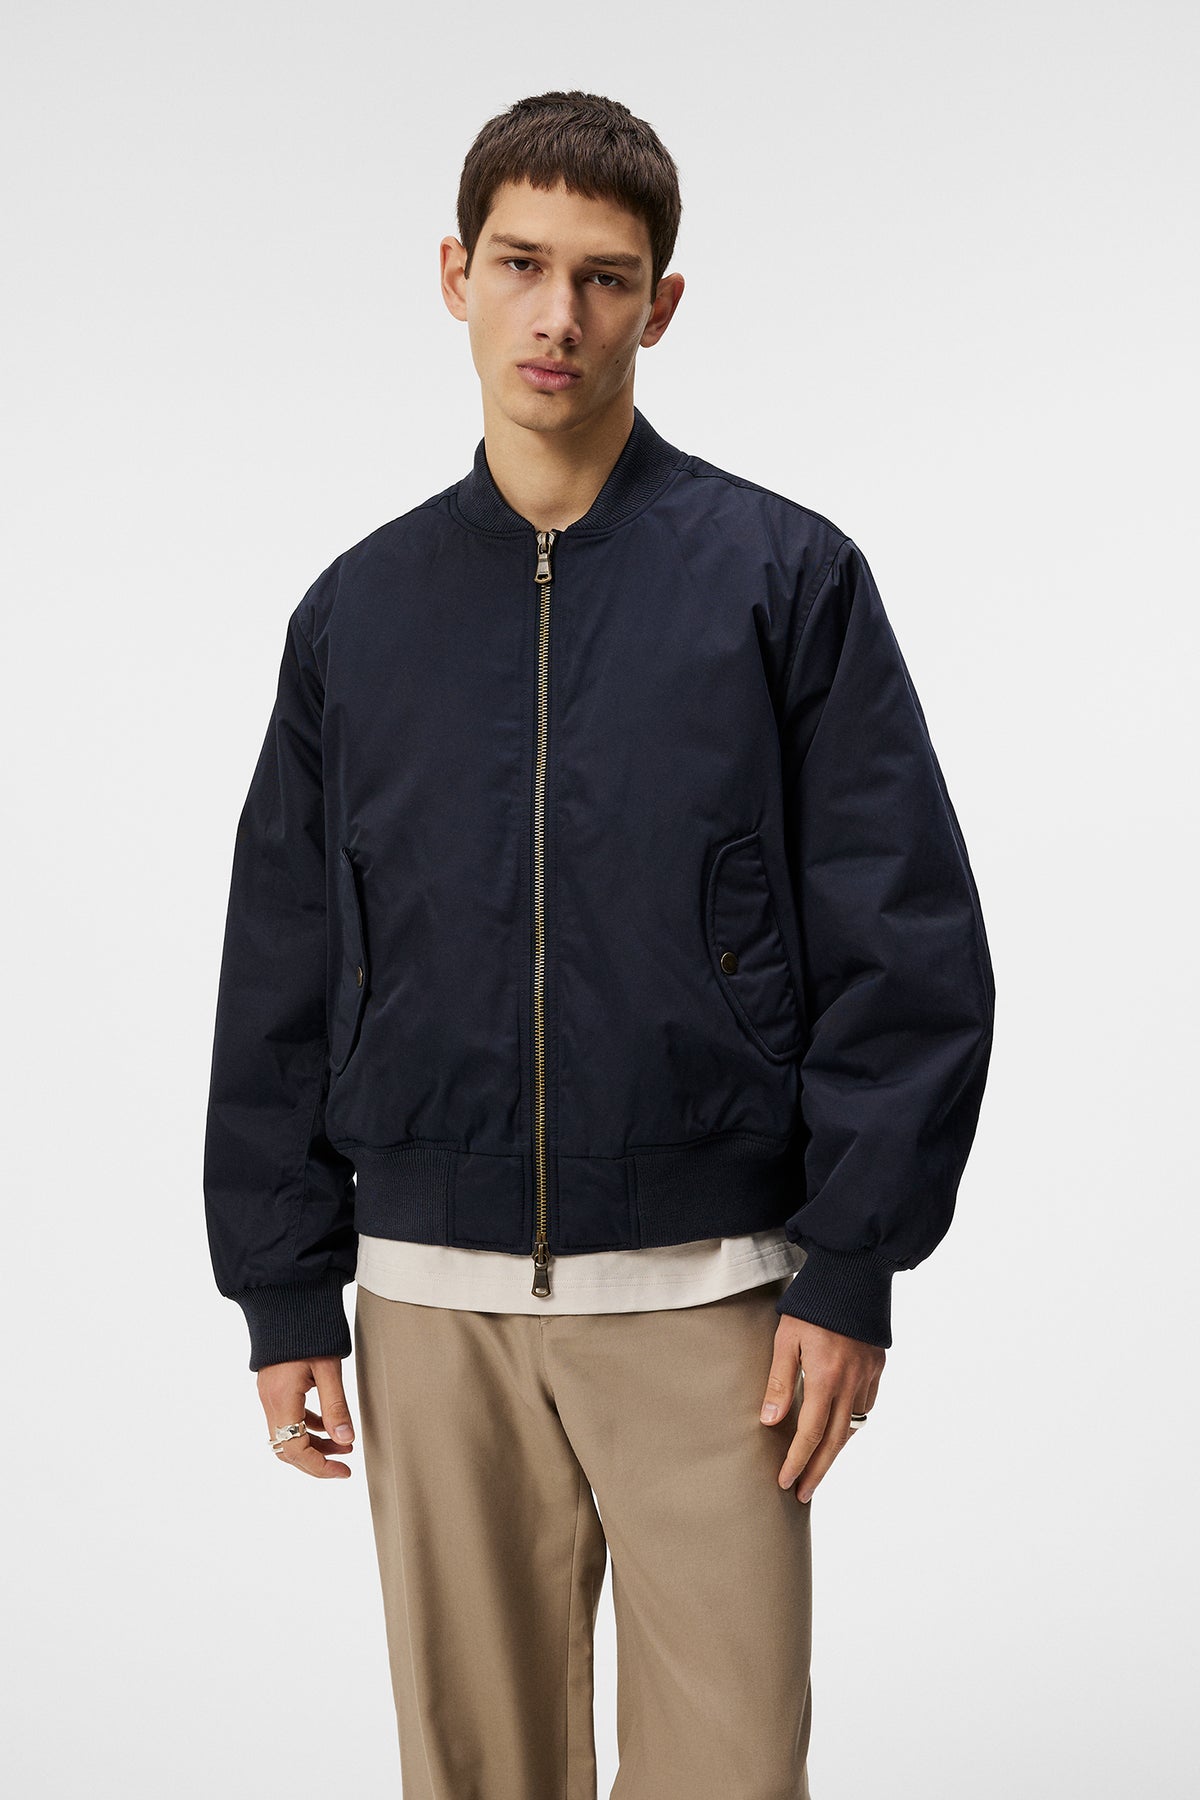 Bradfield Twill Nylon jacket / JL Navy